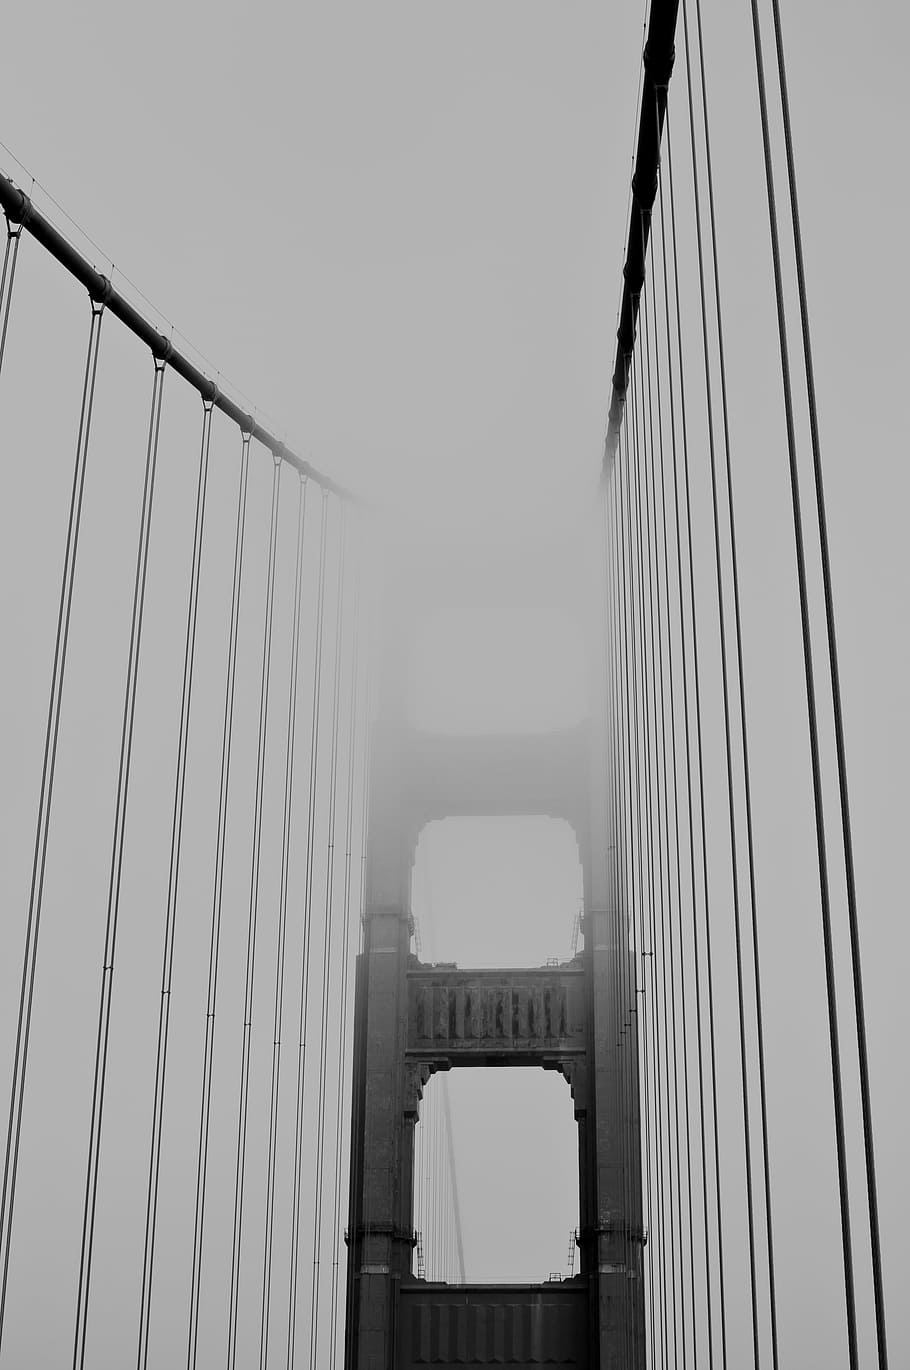 foto grayscale, emas, jembatan gerbang, san francisco, california, grey, suspensi, jembatan, Jembatan Golden Gate, arsitektur